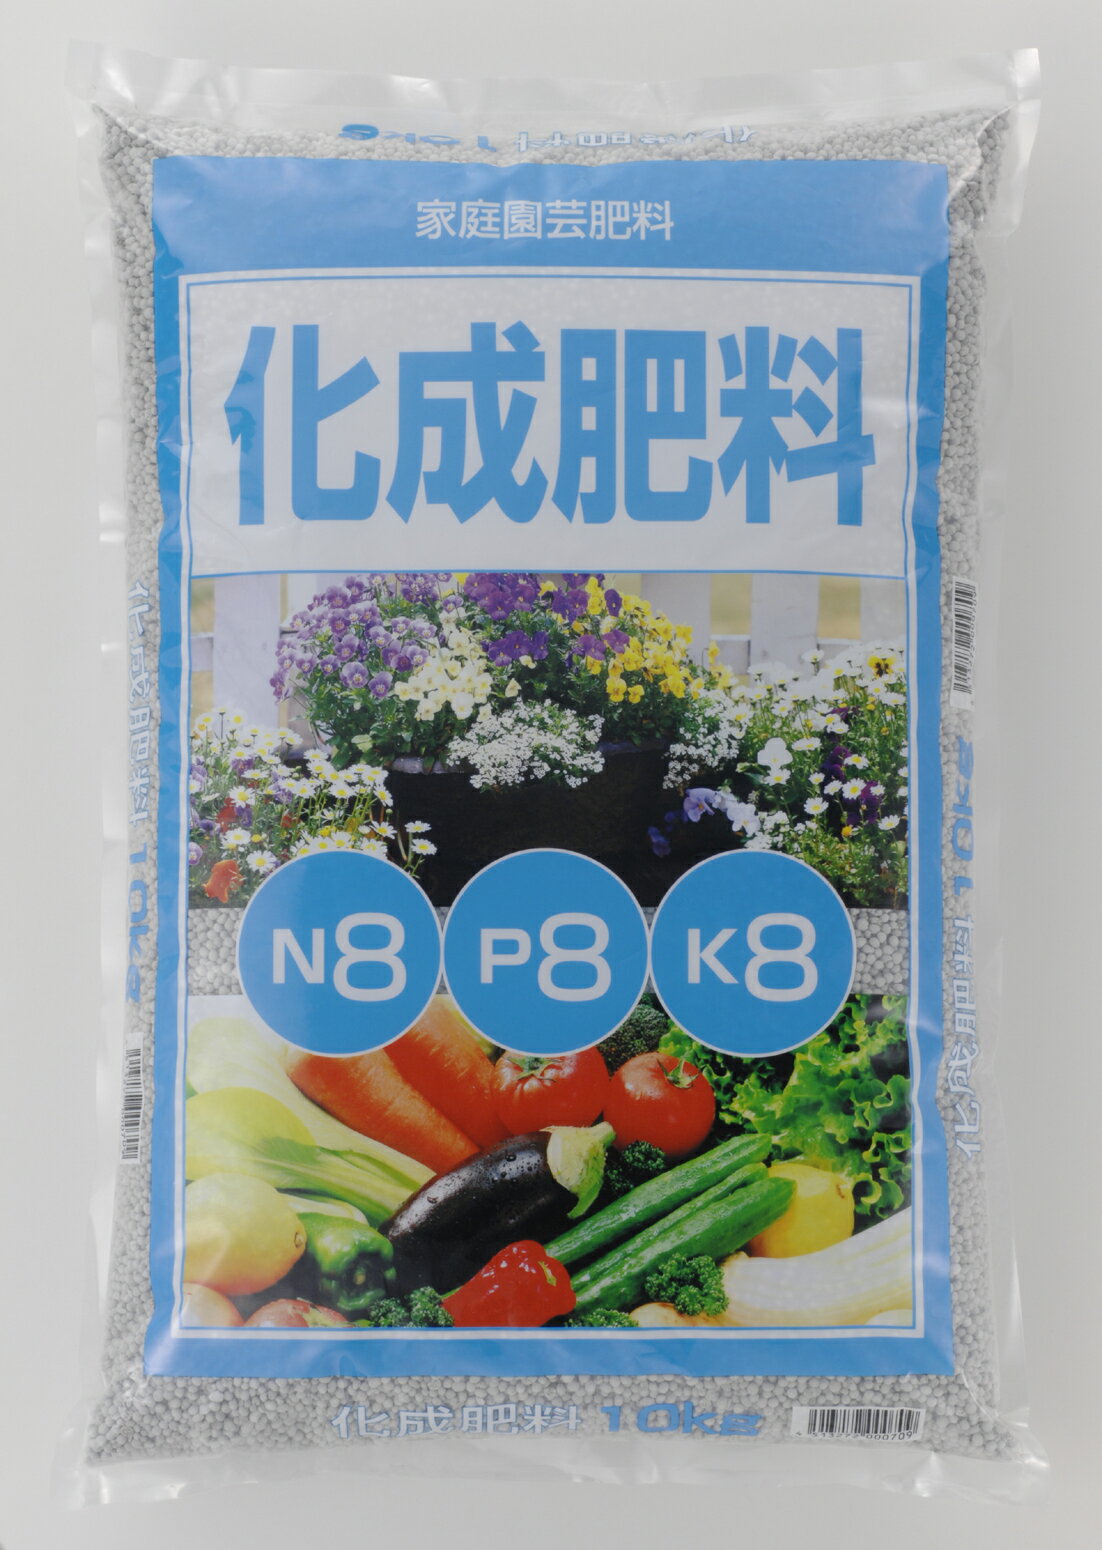 化成肥料 10kg 8-8-8 肥料の三要素 チッソ リンサン カリ が等分に入った粒状肥料です 野菜や草花などあらゆる植物に素早い効果を発揮します 